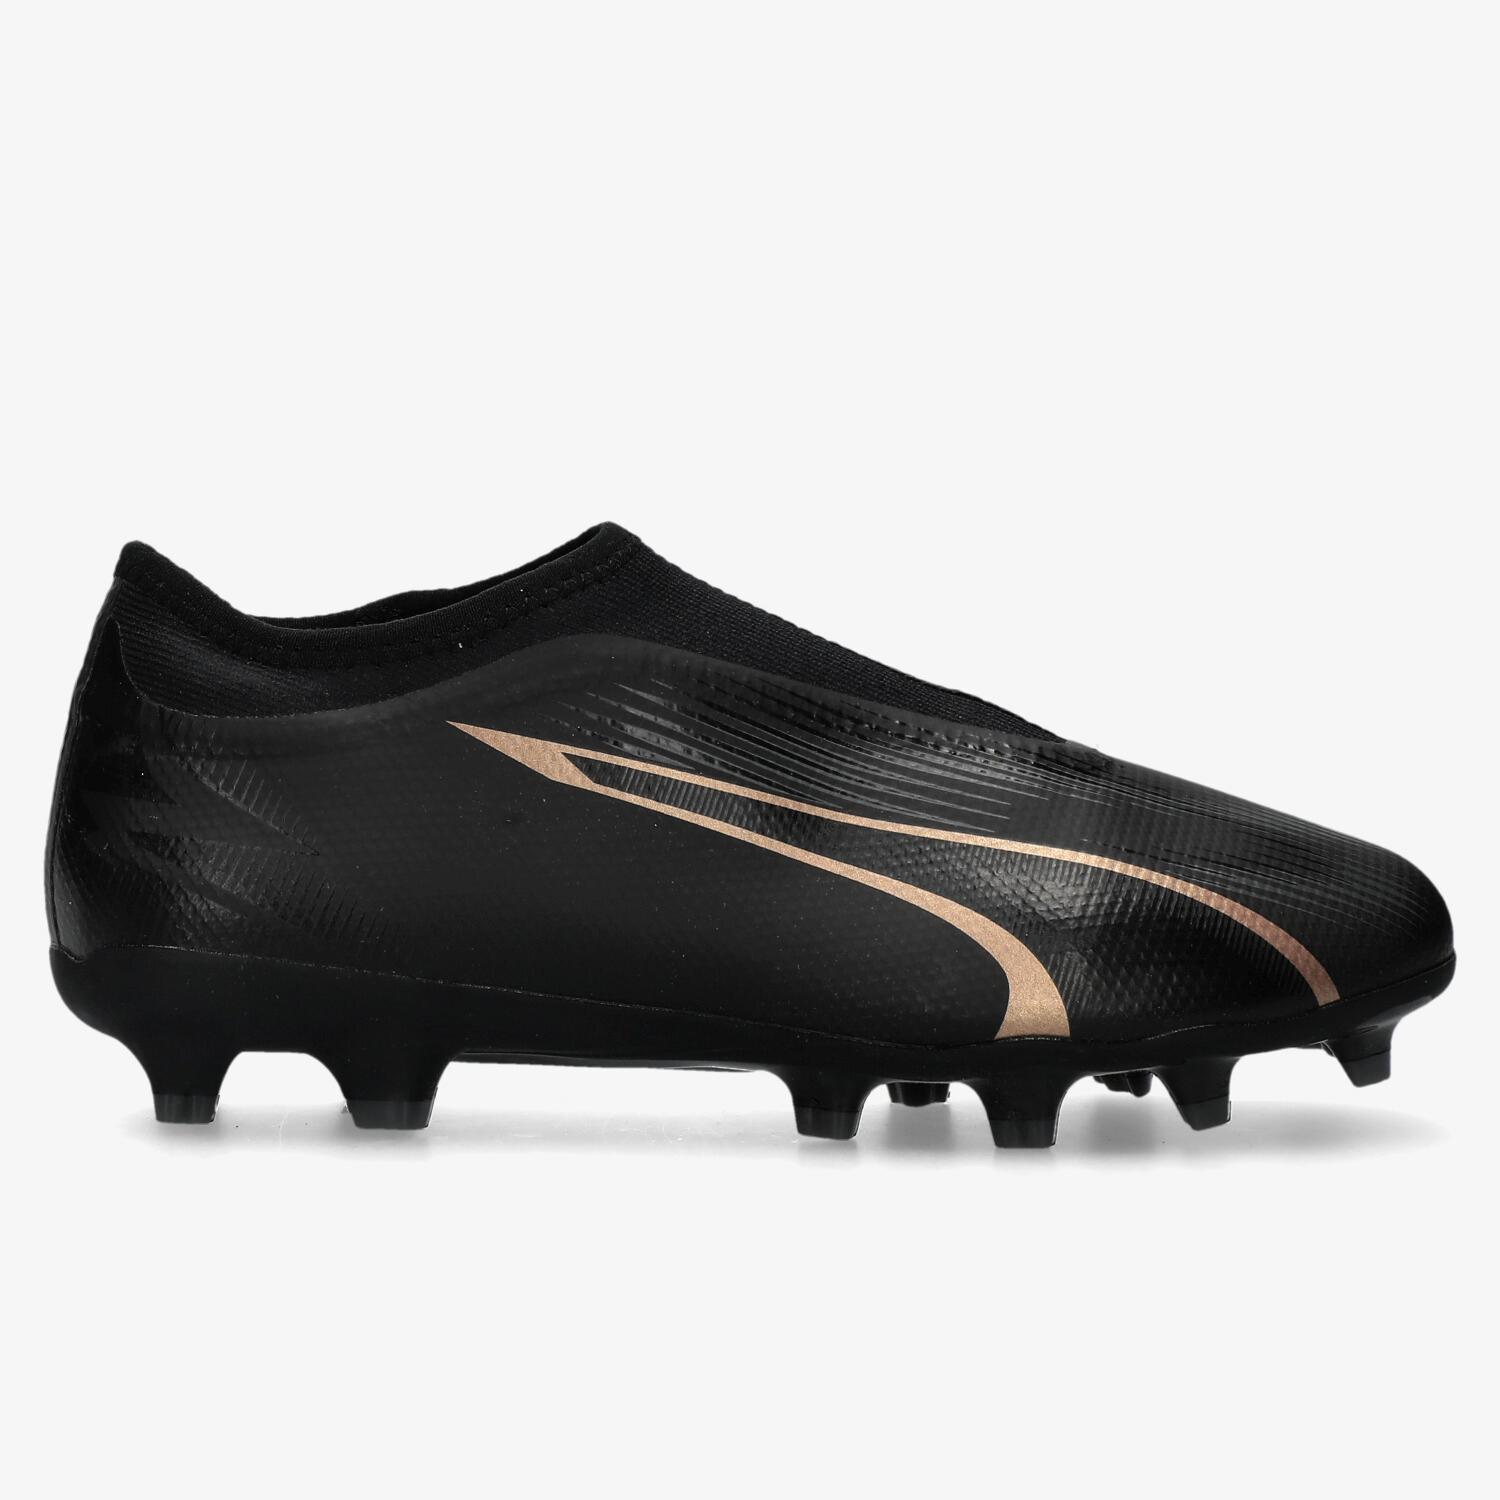 Puma imprime velocidad a sus botas de fútbol - Diffusion Sport